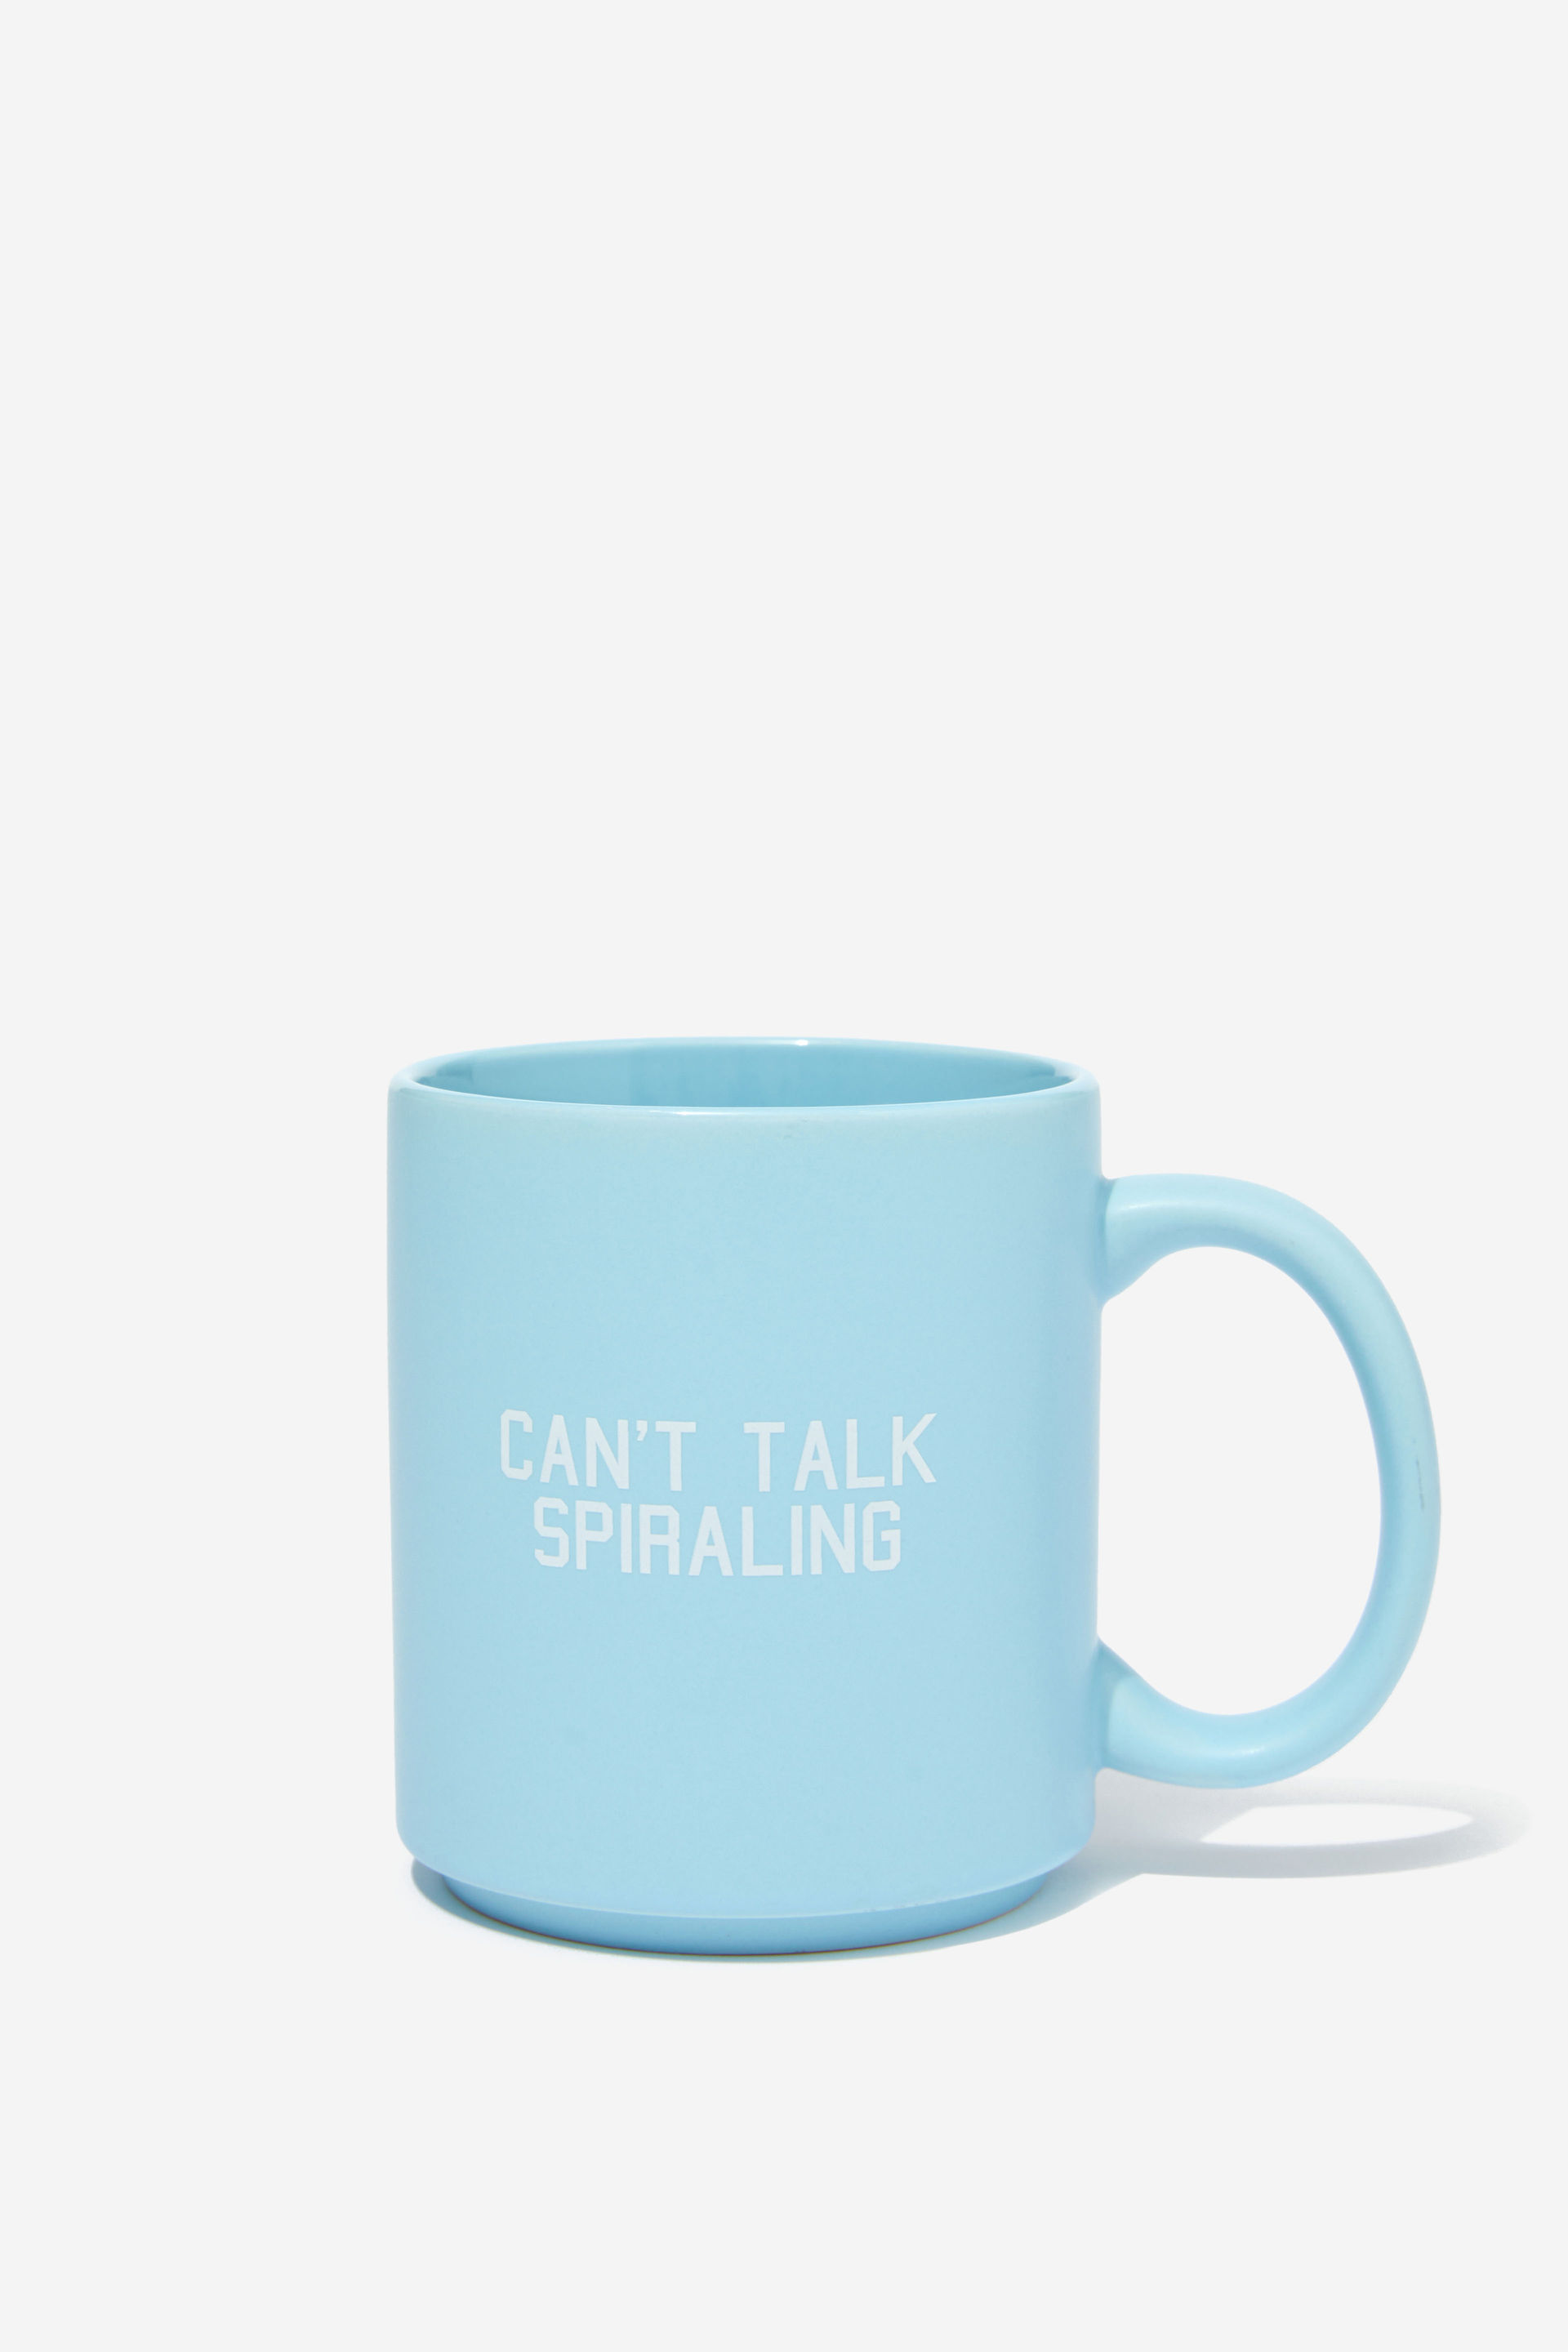 Typo - Daily Mug - Can t talk spiraling